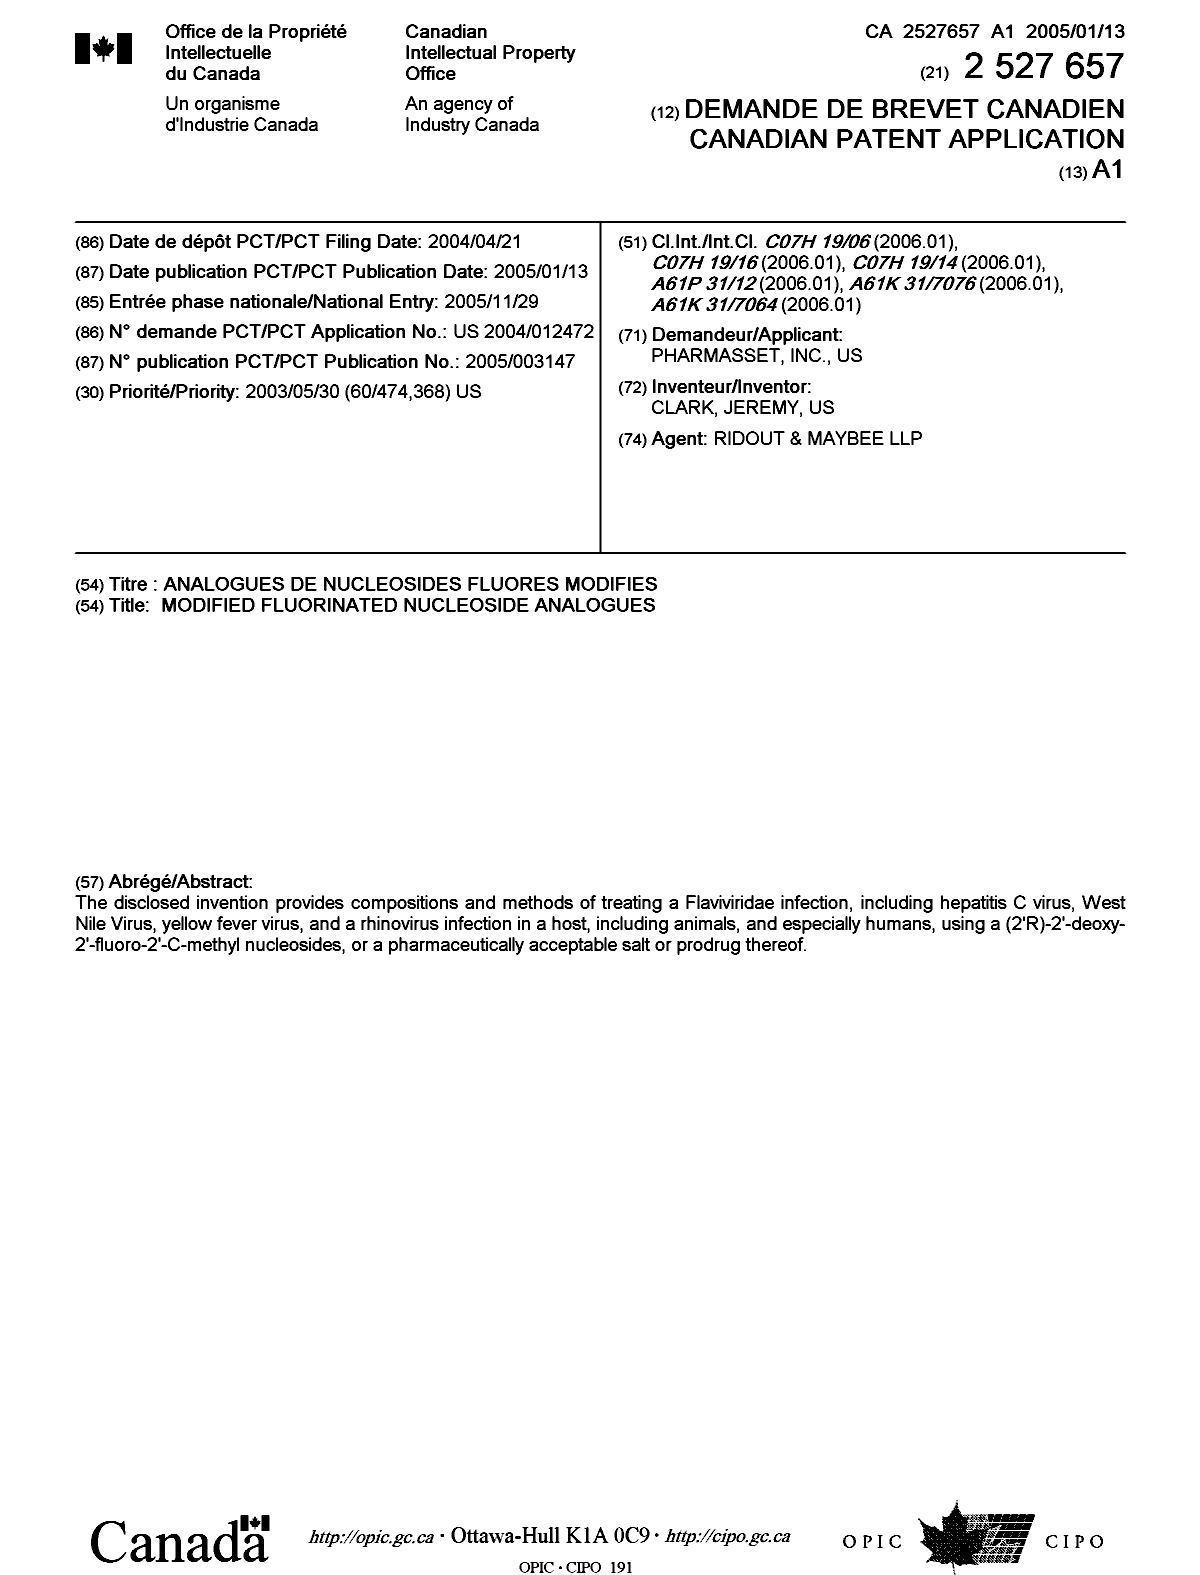 Document de brevet canadien 2527657. Page couverture 20051202. Image 1 de 1